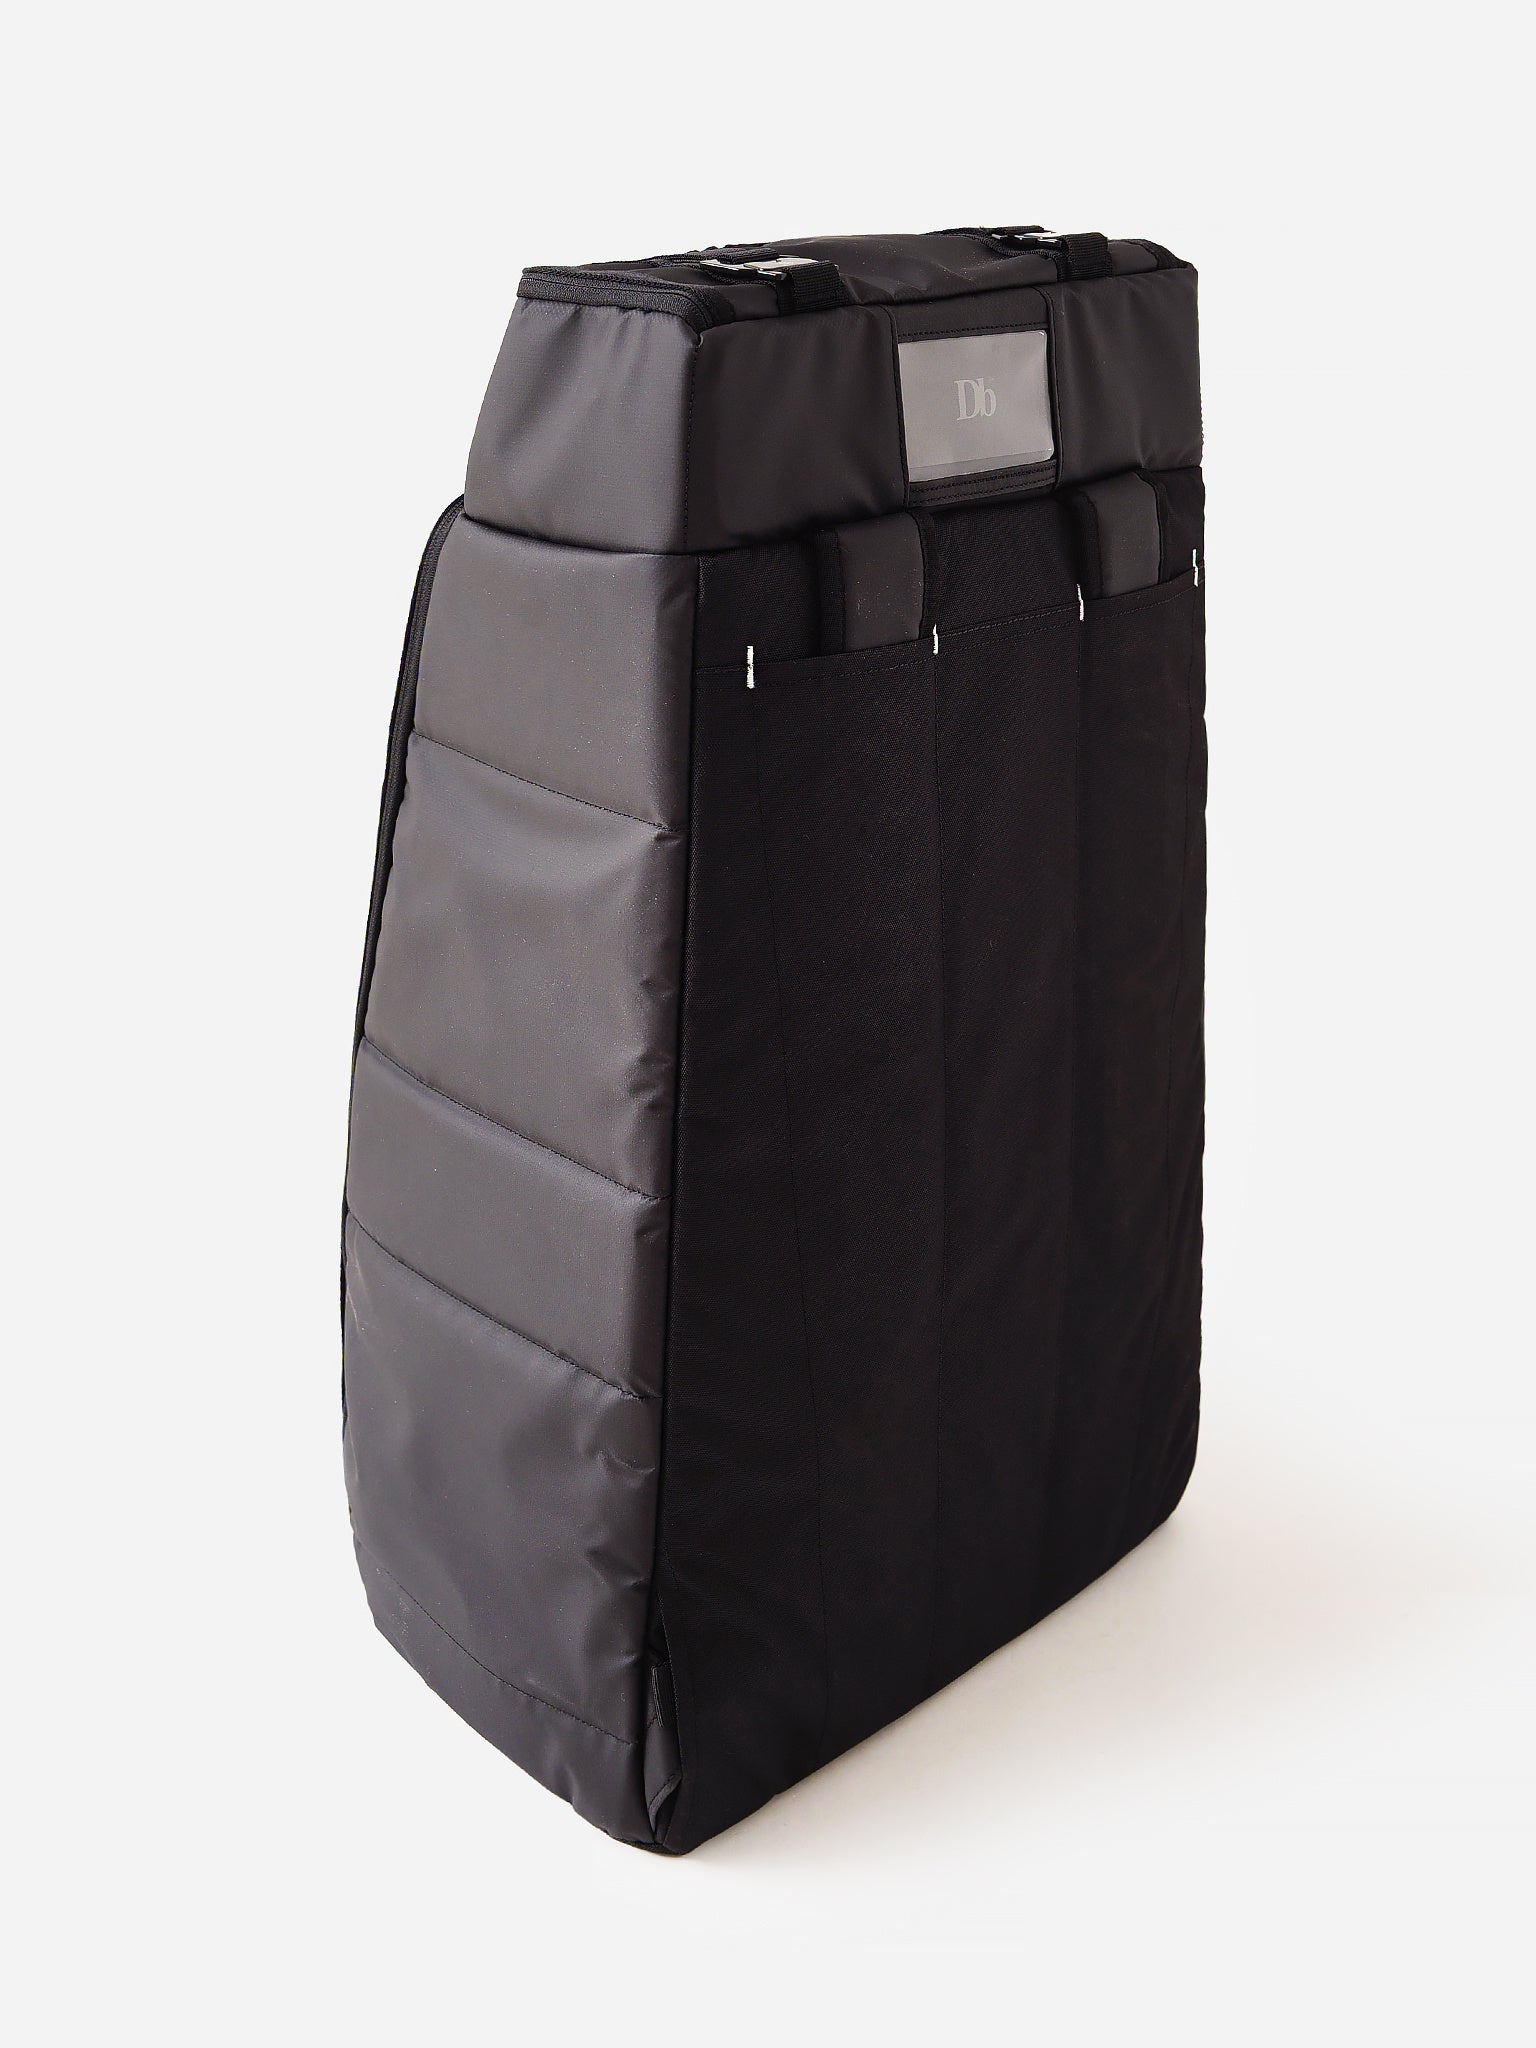 DB The Strøm 50L Backpack - Mochila de viaje, Comprar online